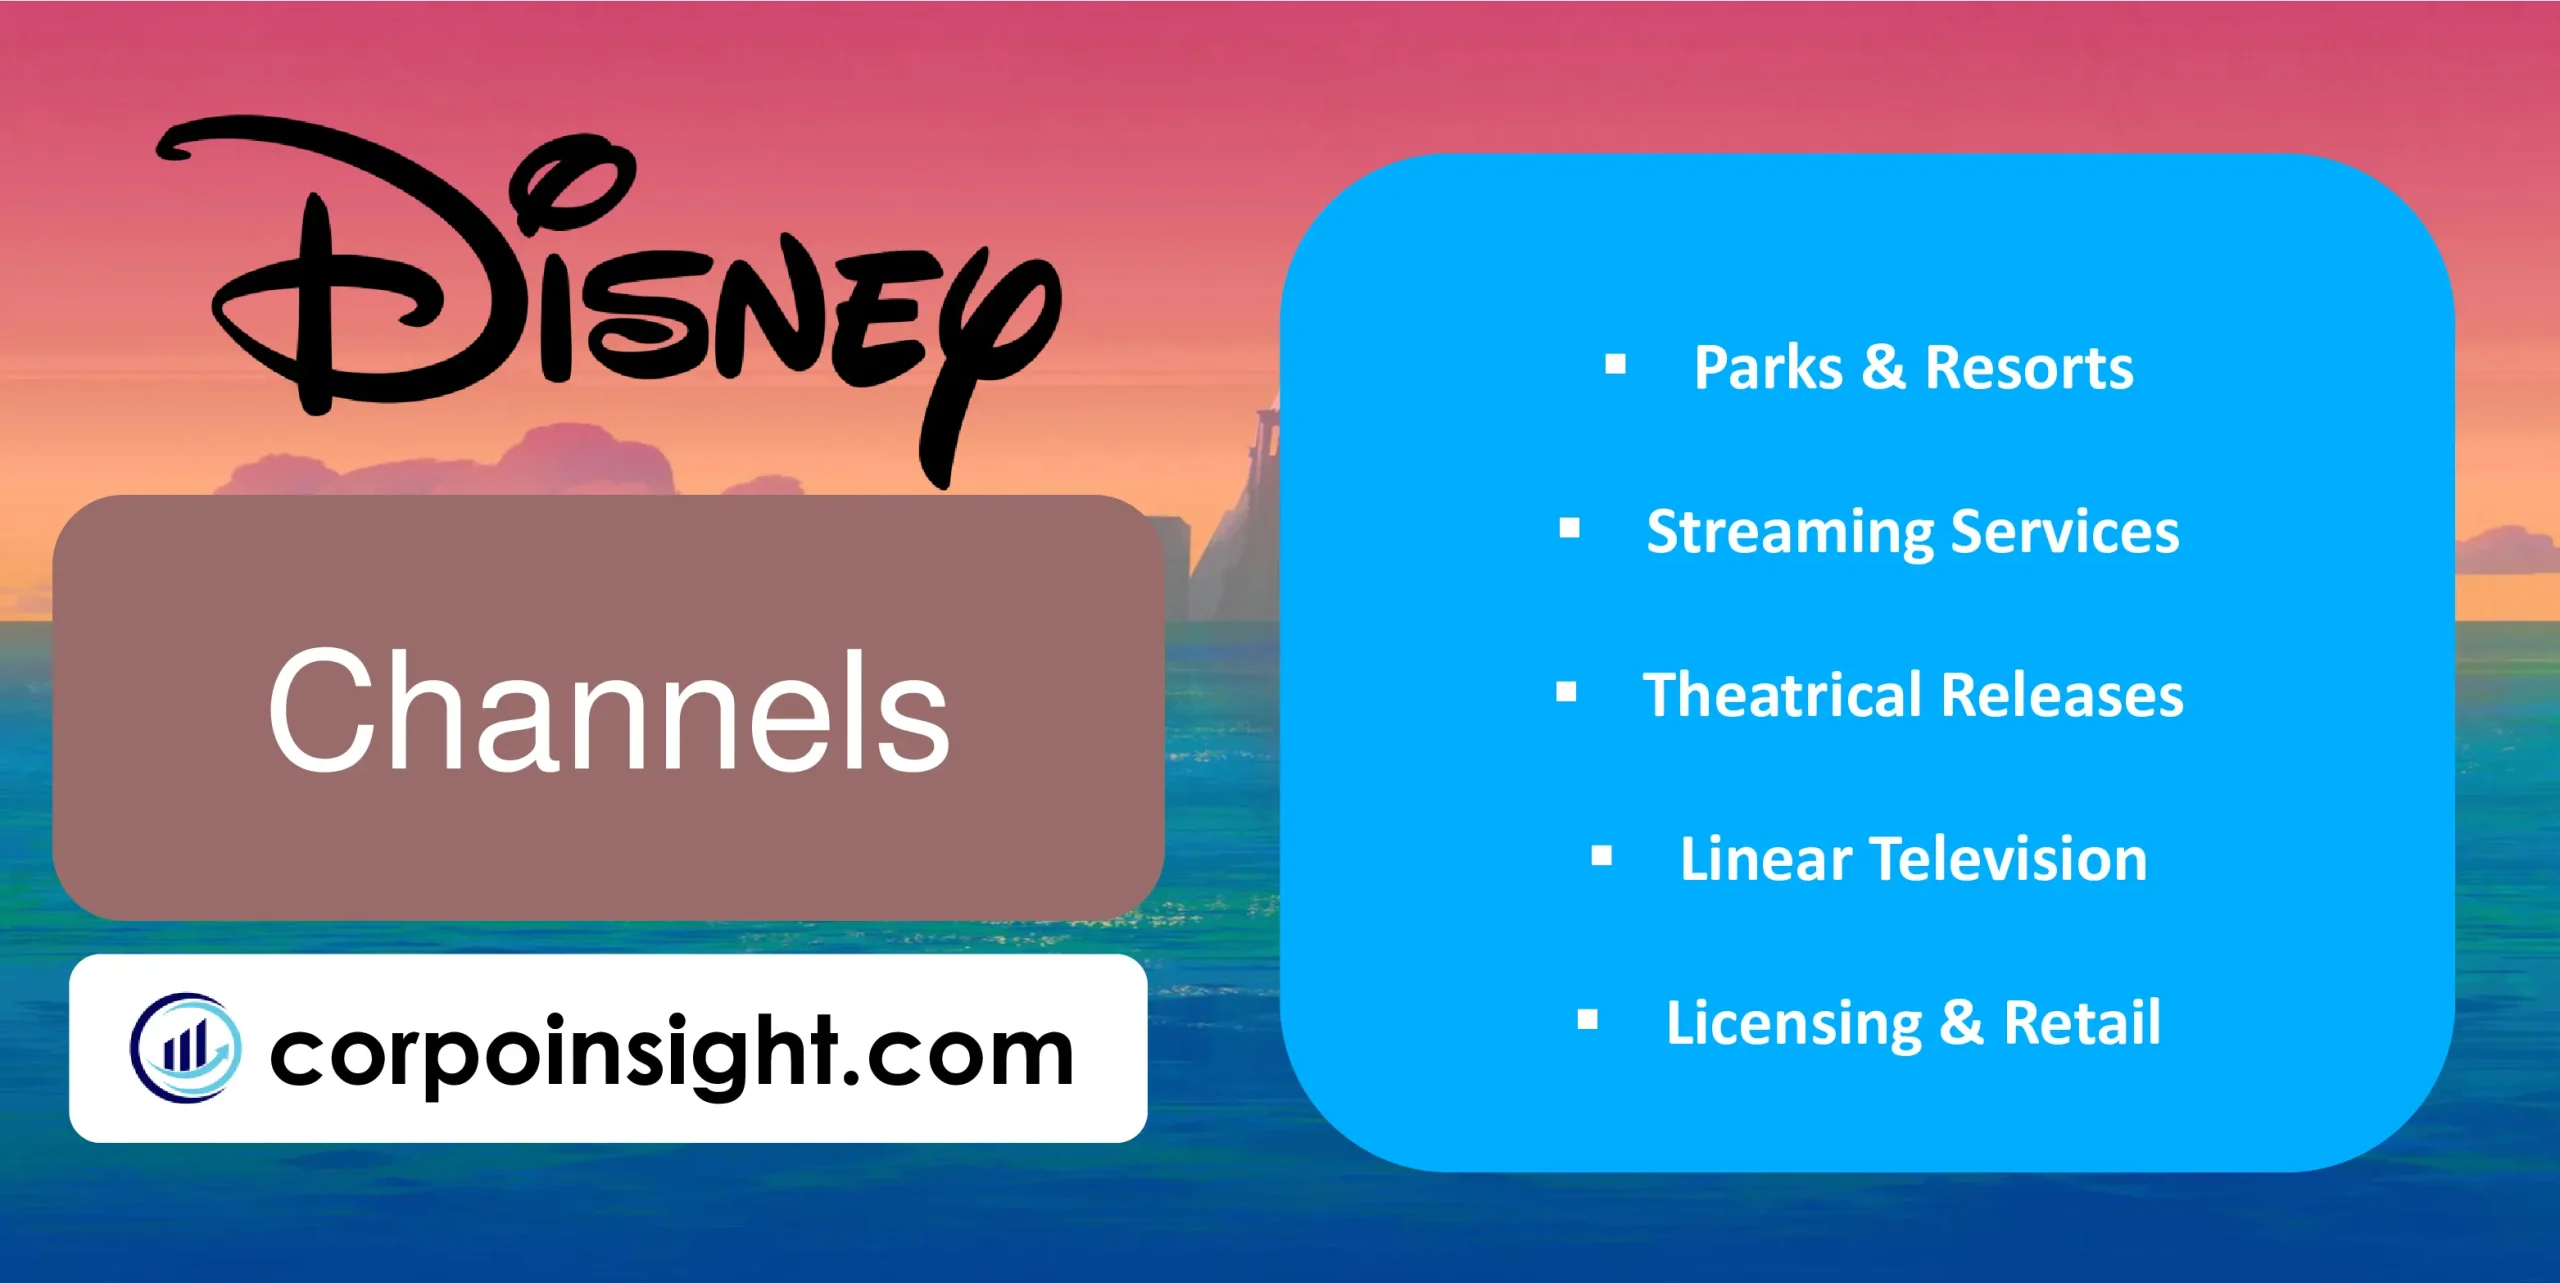 Channels of Disney